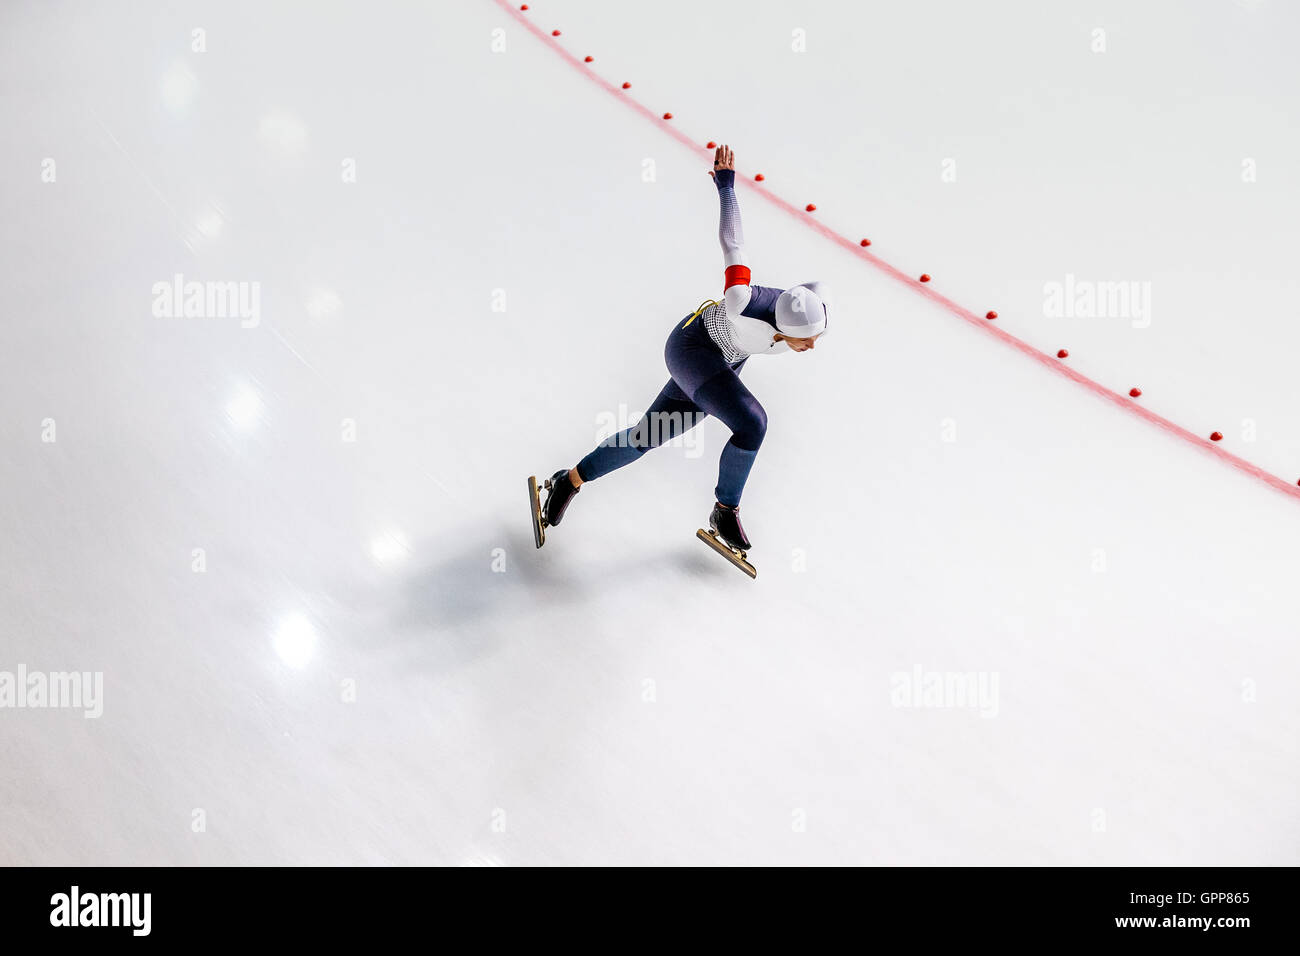 Vista superiore della donna skater sulla gara sprint durante il Summer Cup di pattinaggio di velocità Foto Stock